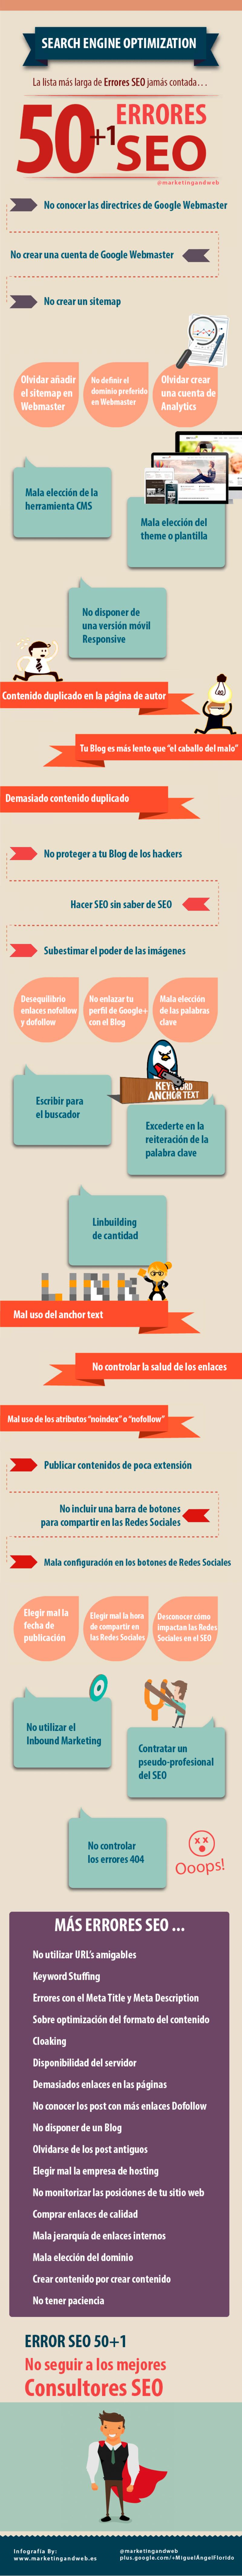 Infografía en español con 50+1 errores SEO